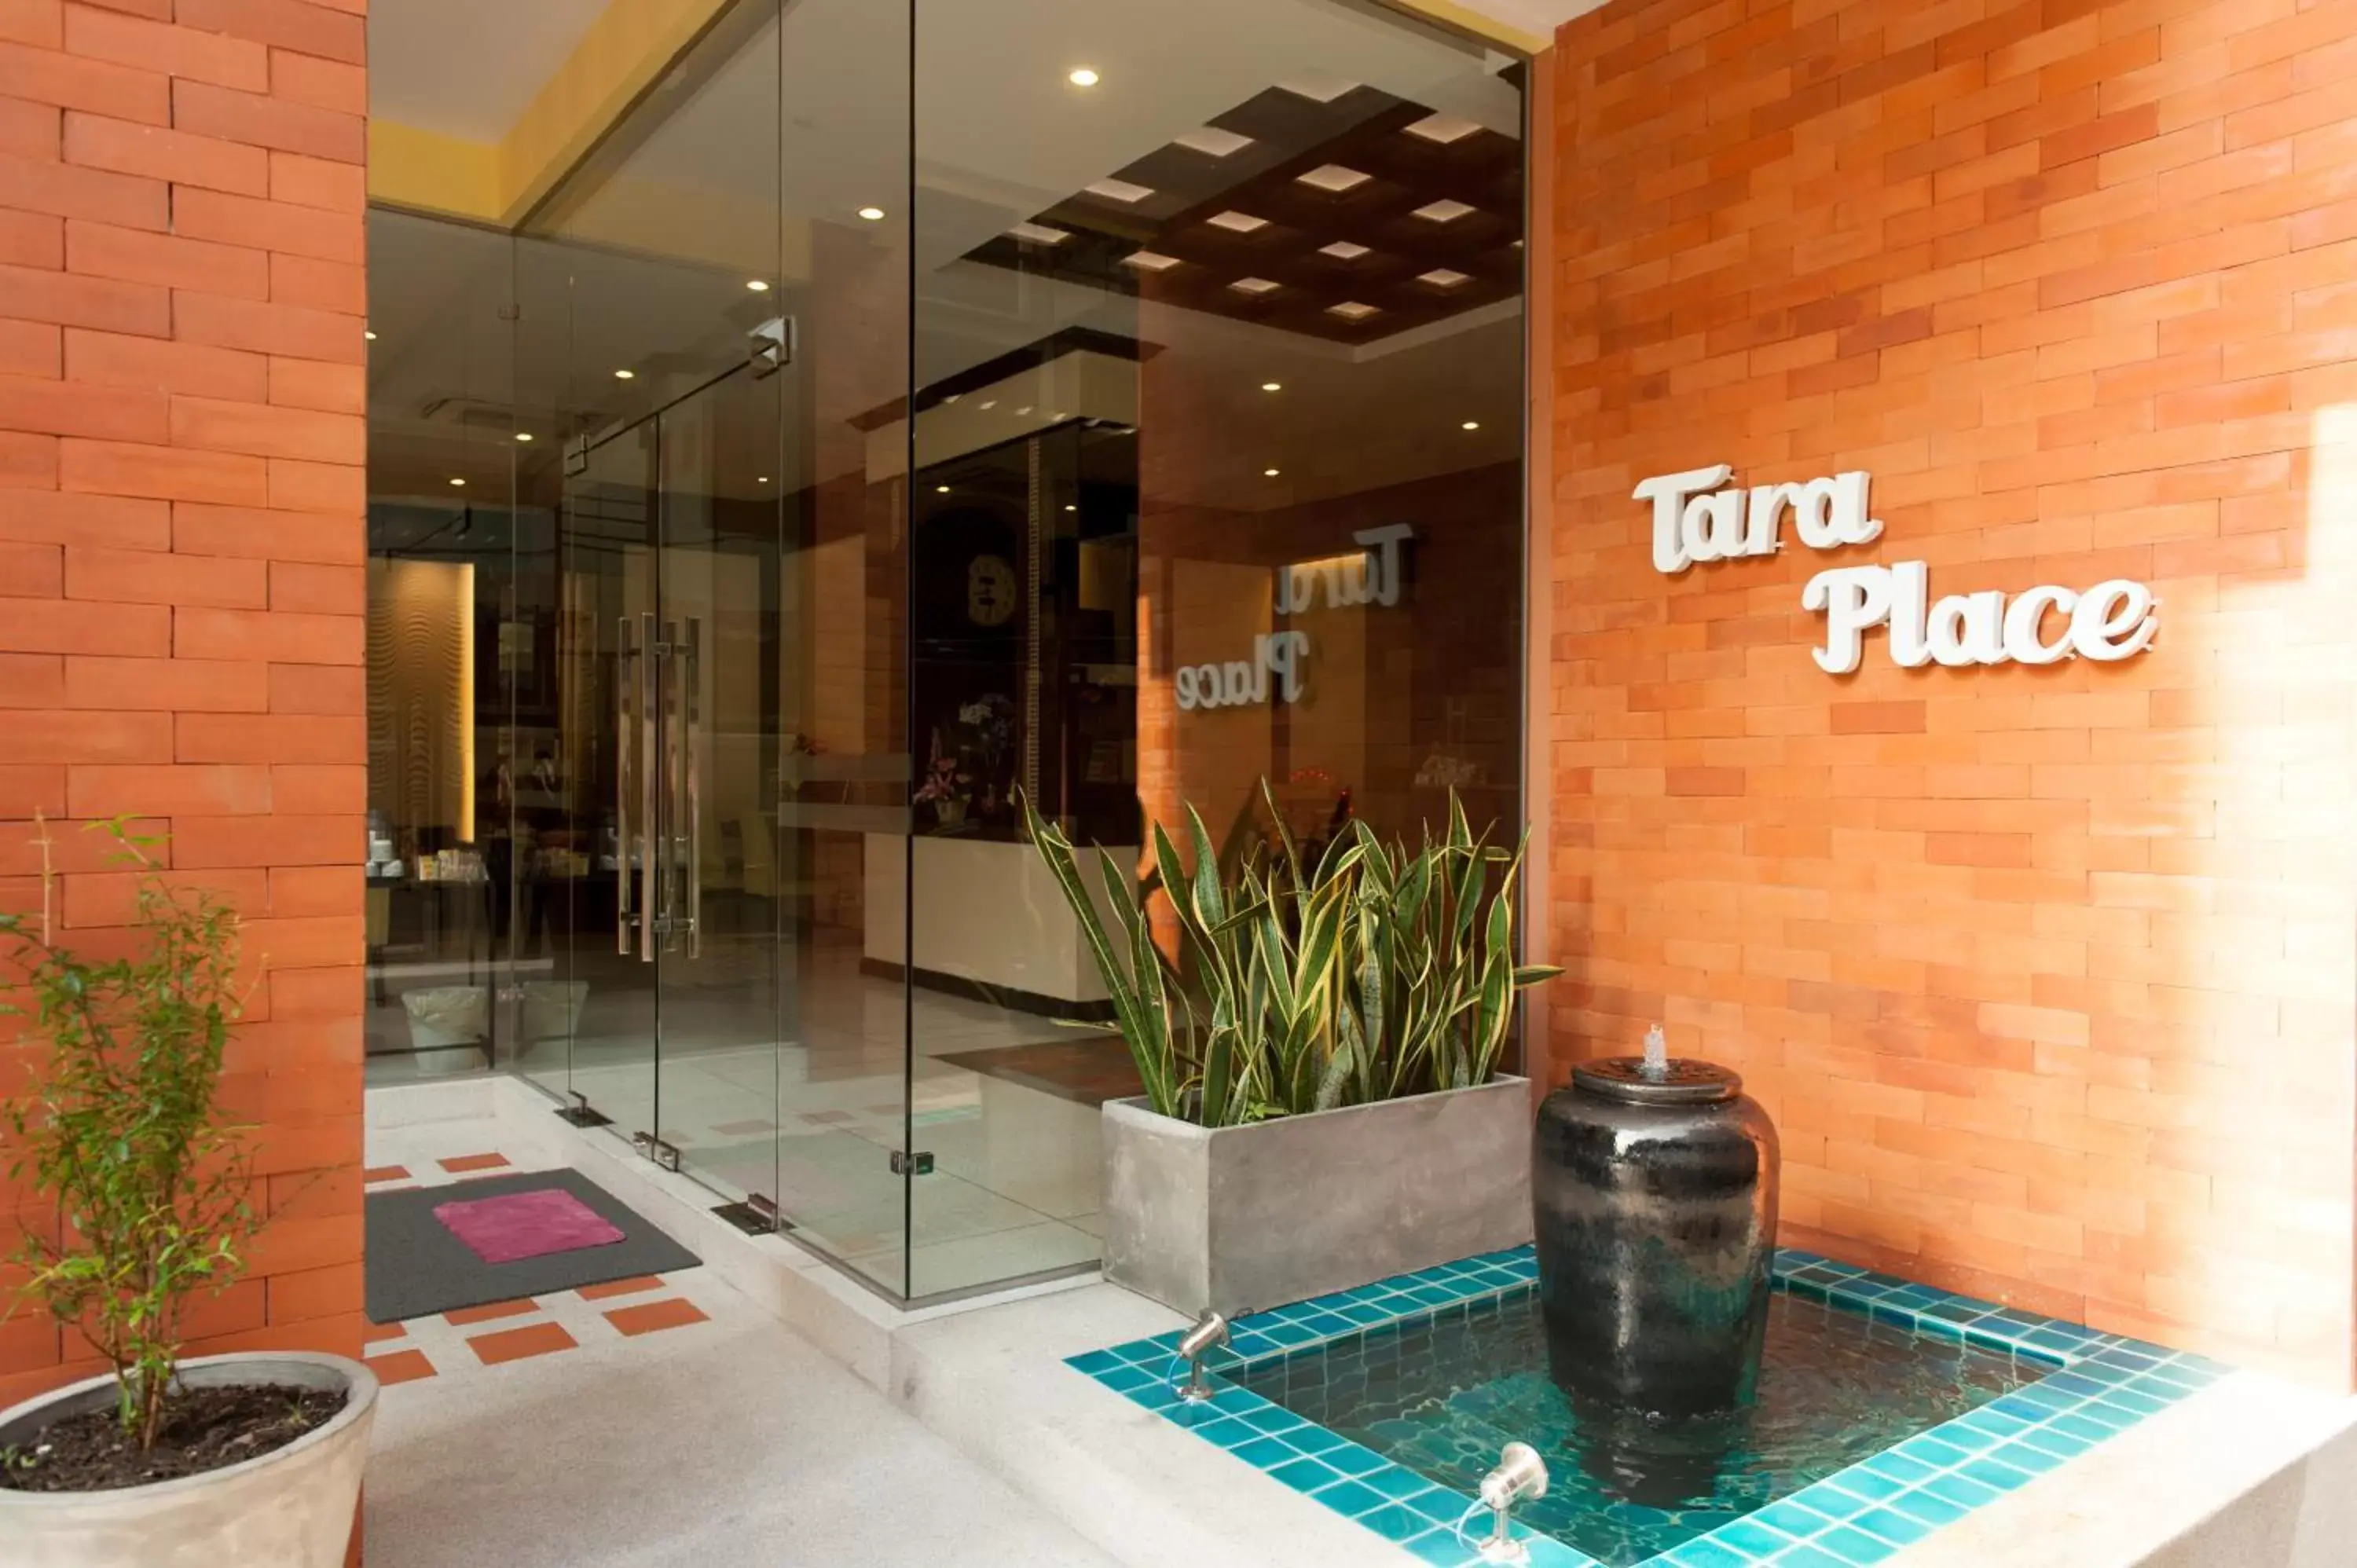 Facade/entrance in Tara Place Hotel Bangkok